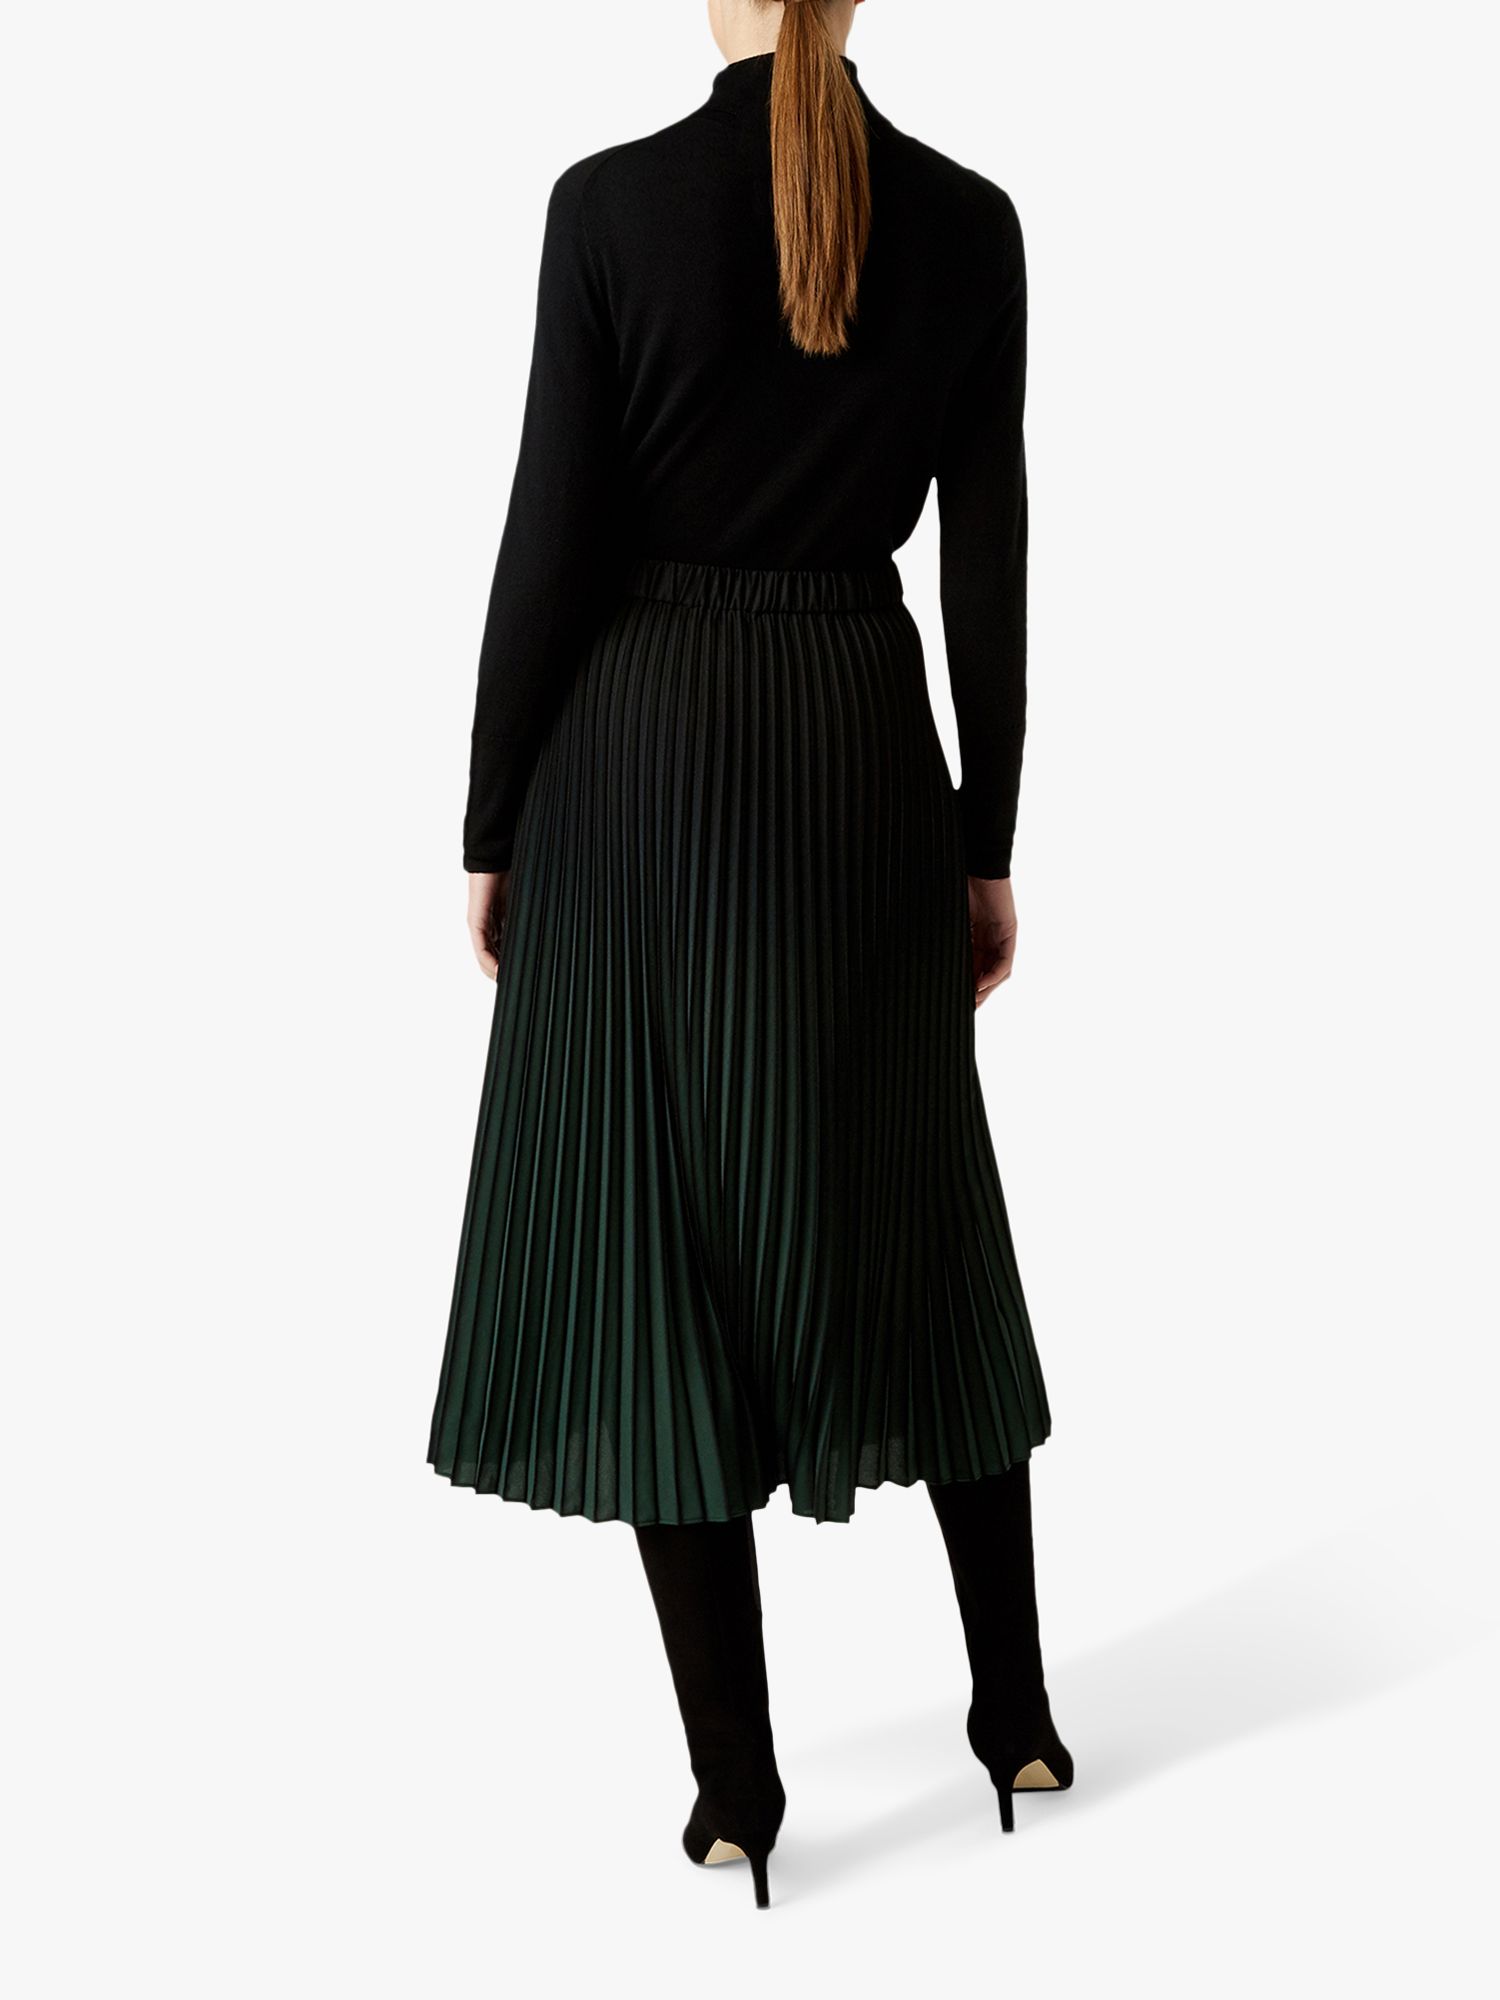 Hobbs Tasha Pleated Midi Skirt, Black/Green at John Lewis & Partners